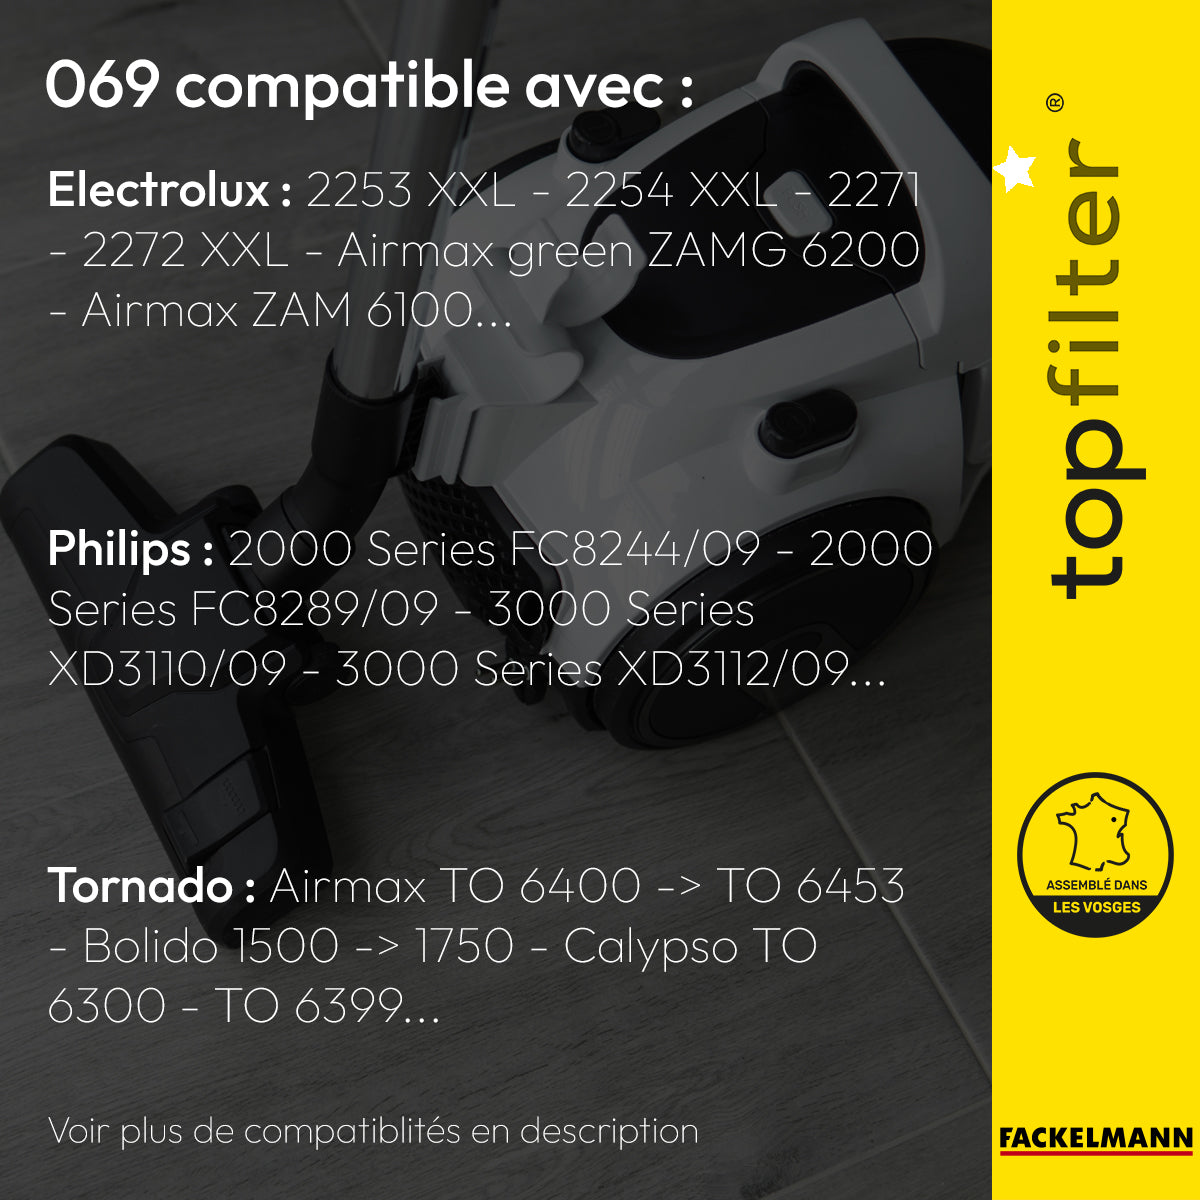 Lot de 4 sacs aspirateur Electrolux Philips et Tornado TopFilter Premium